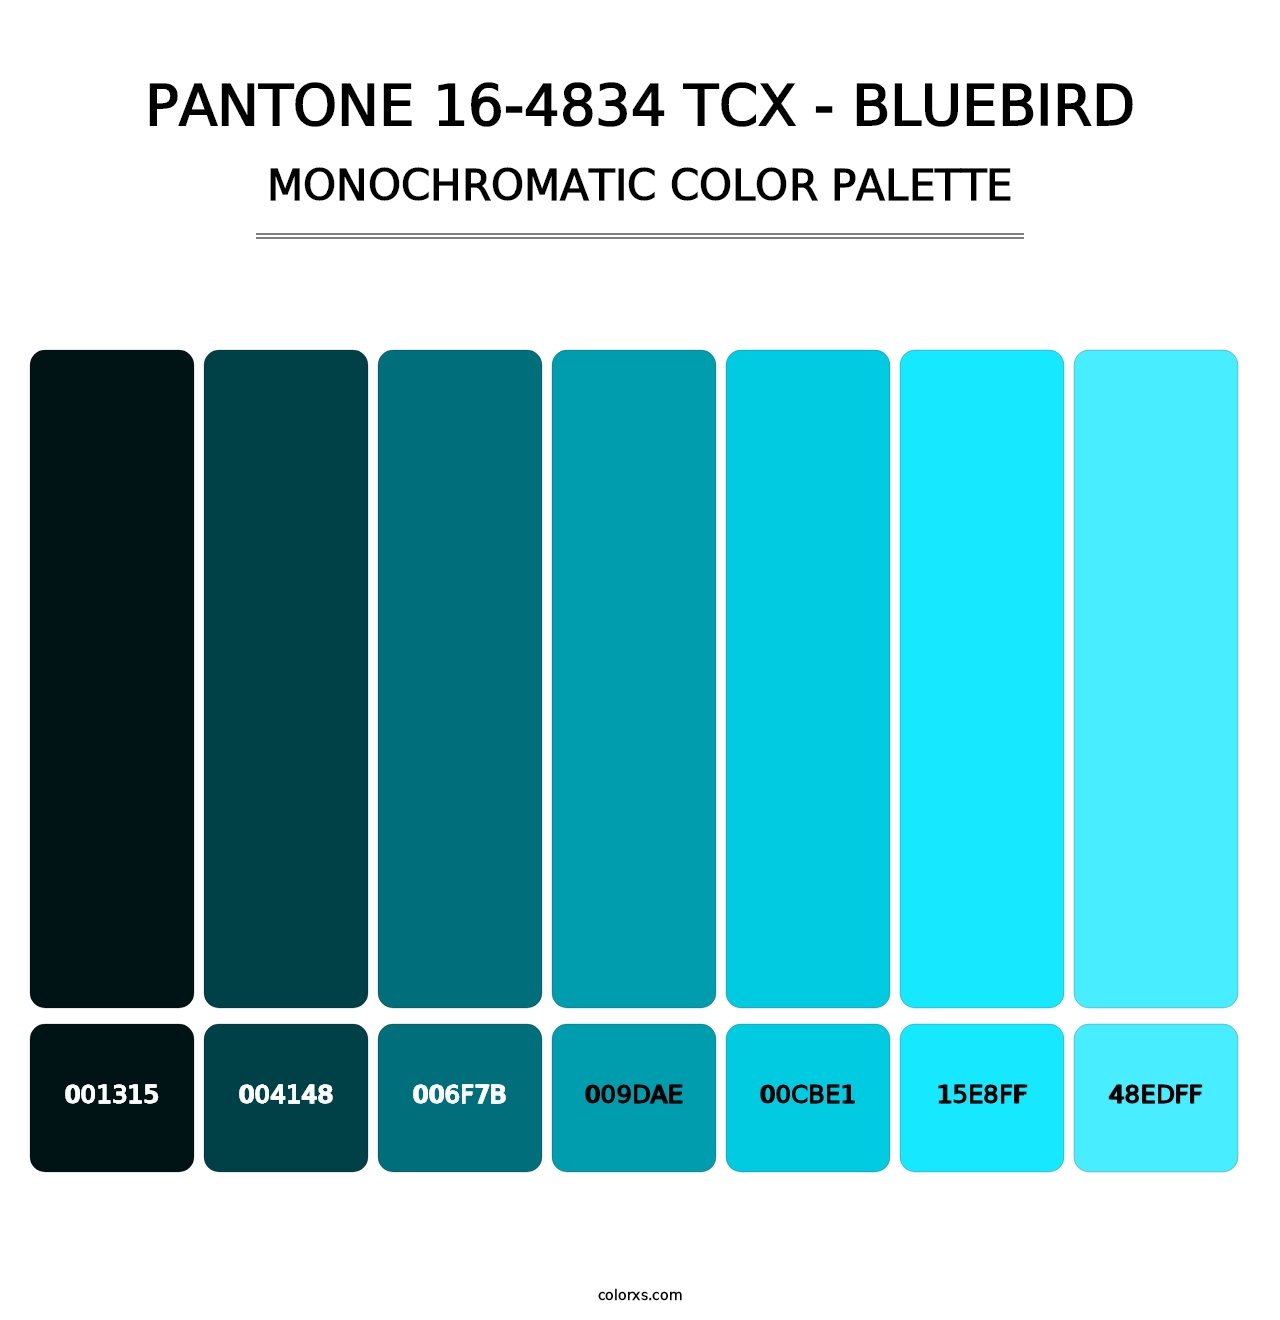 PANTONE 16-4834 TCX - Bluebird - Monochromatic Color Palette